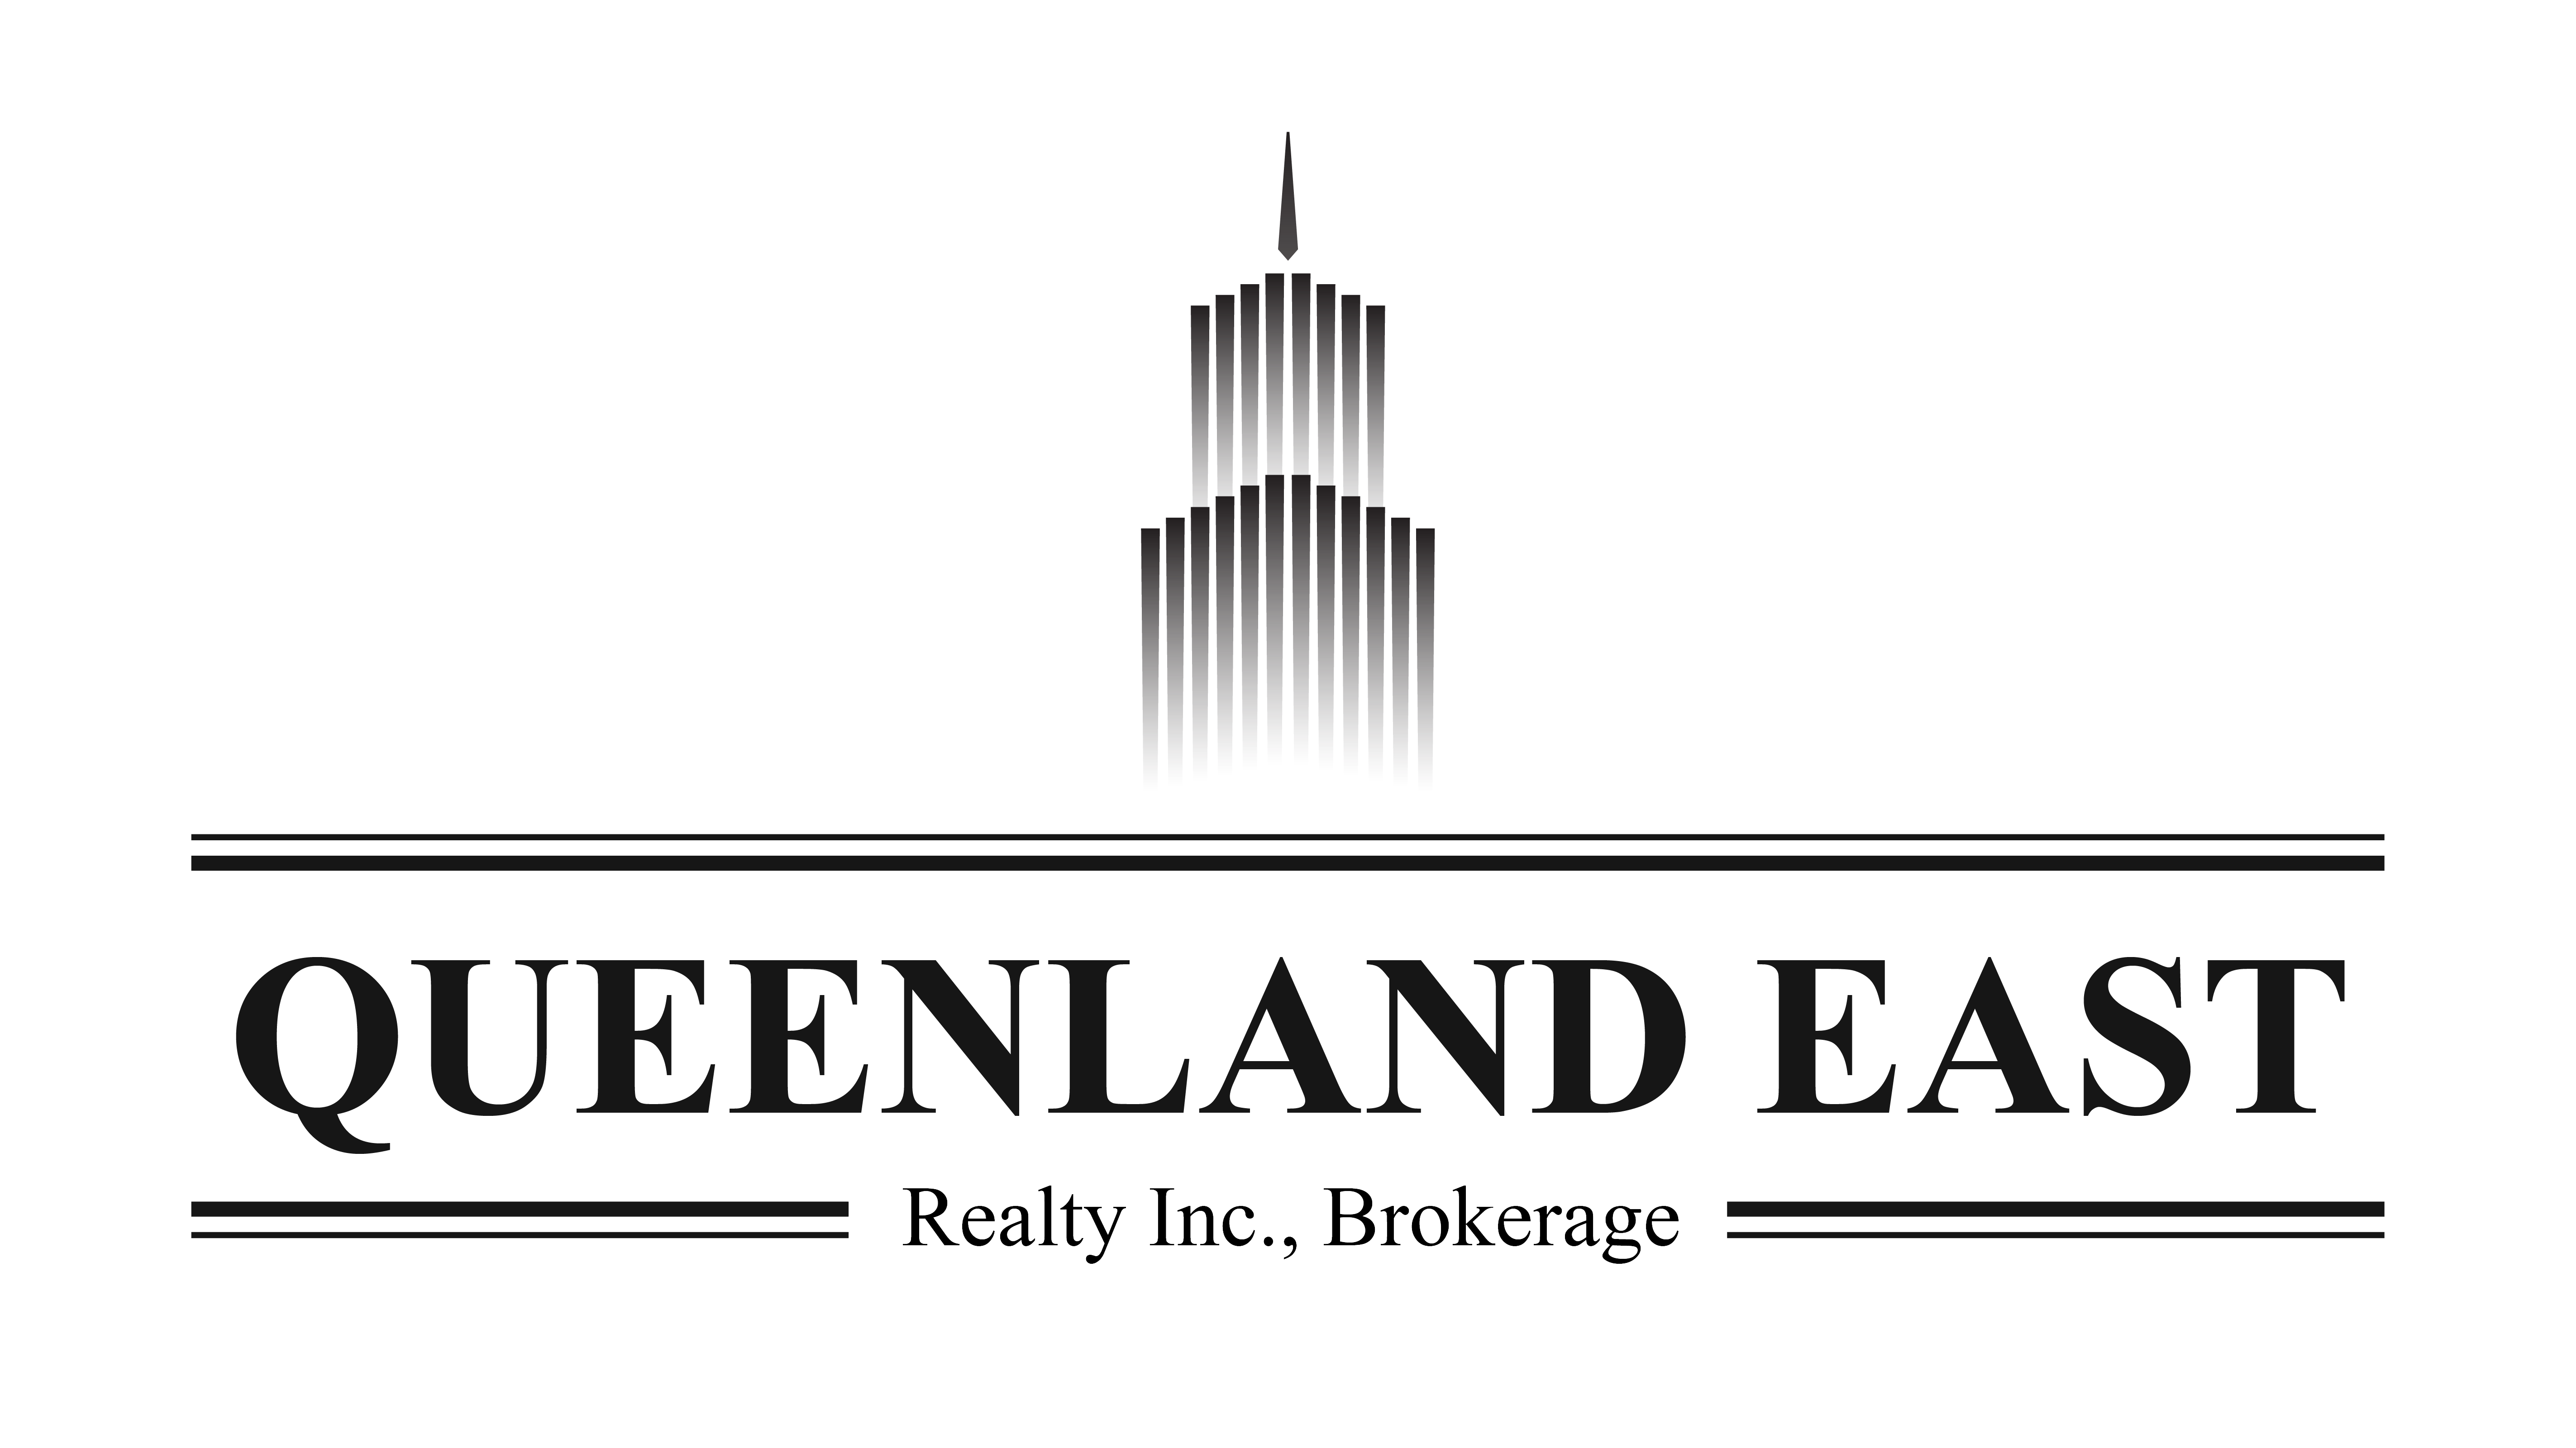 Queenland East Realty Inc., Brokerage